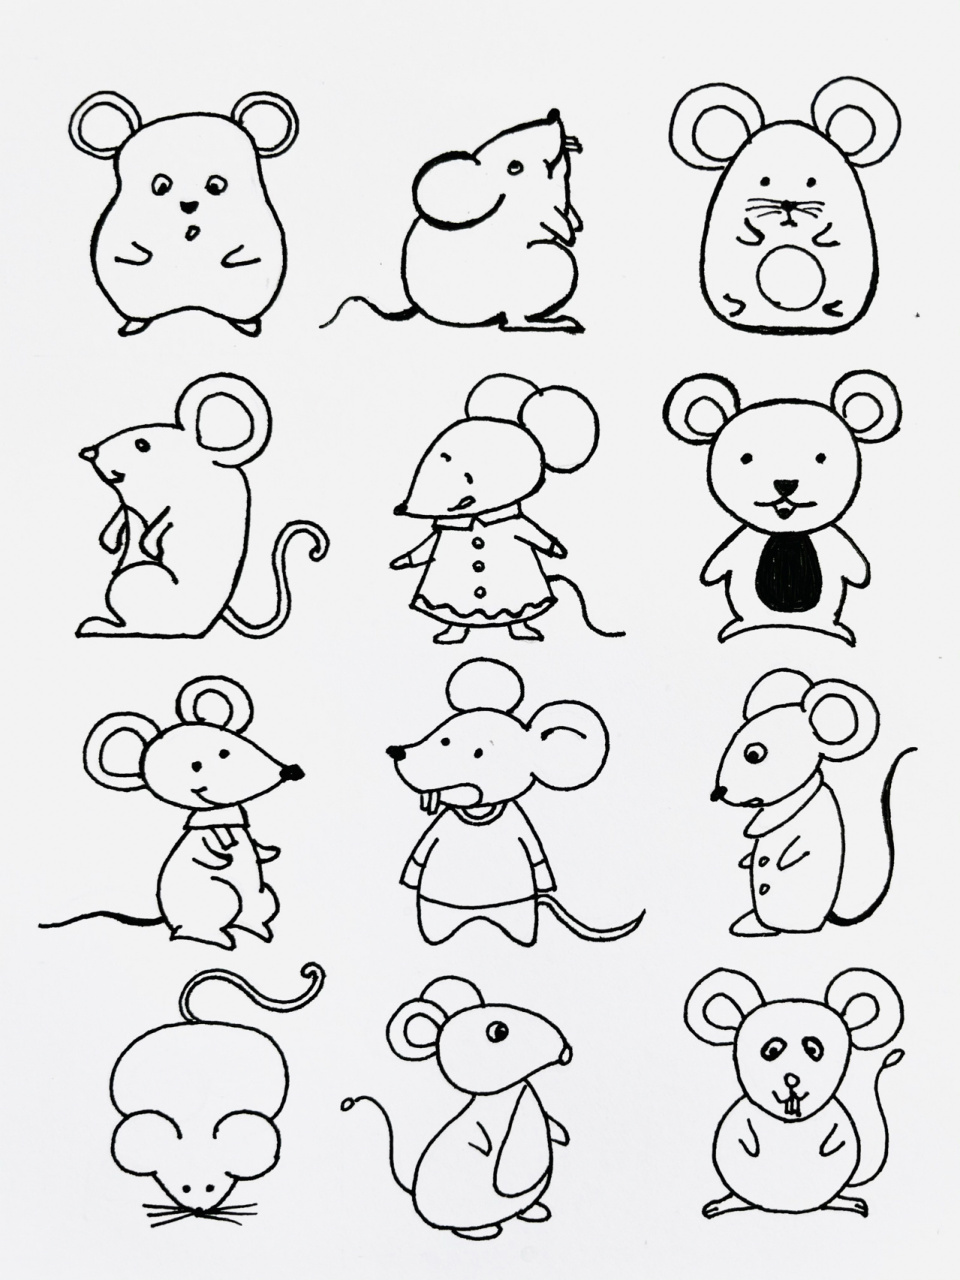 小老鼠简笔画小动物图片